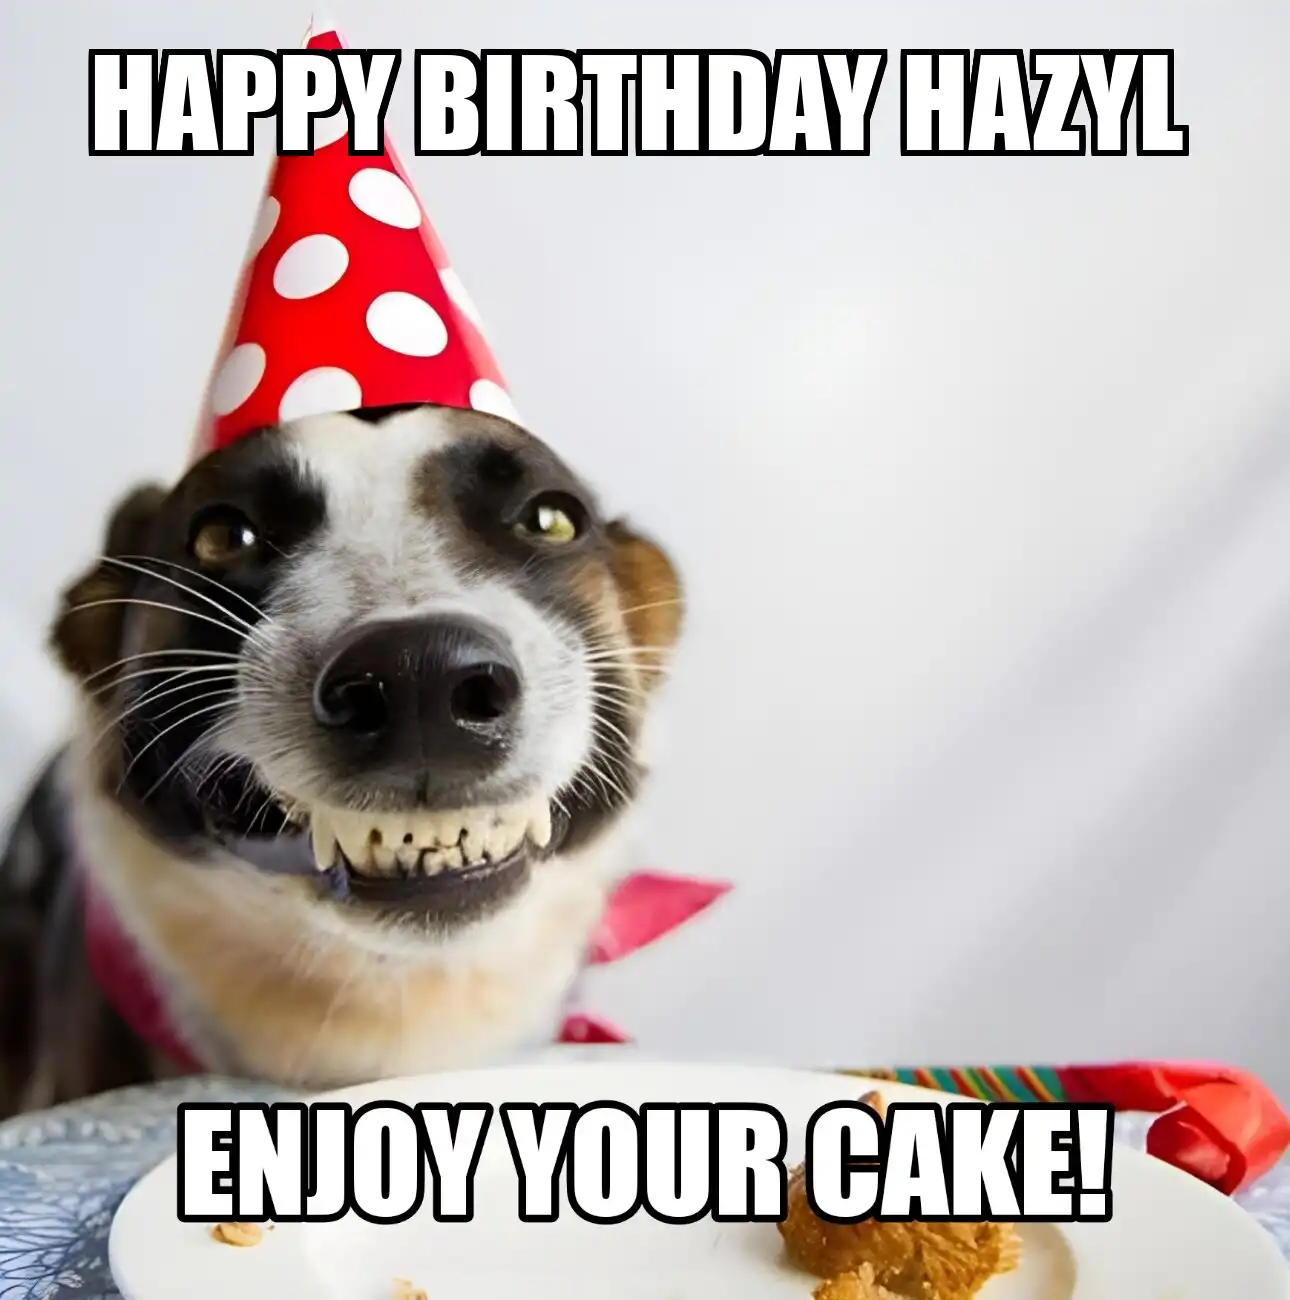 Happy Birthday Hazyl Enjoy Your Cake Dog Meme